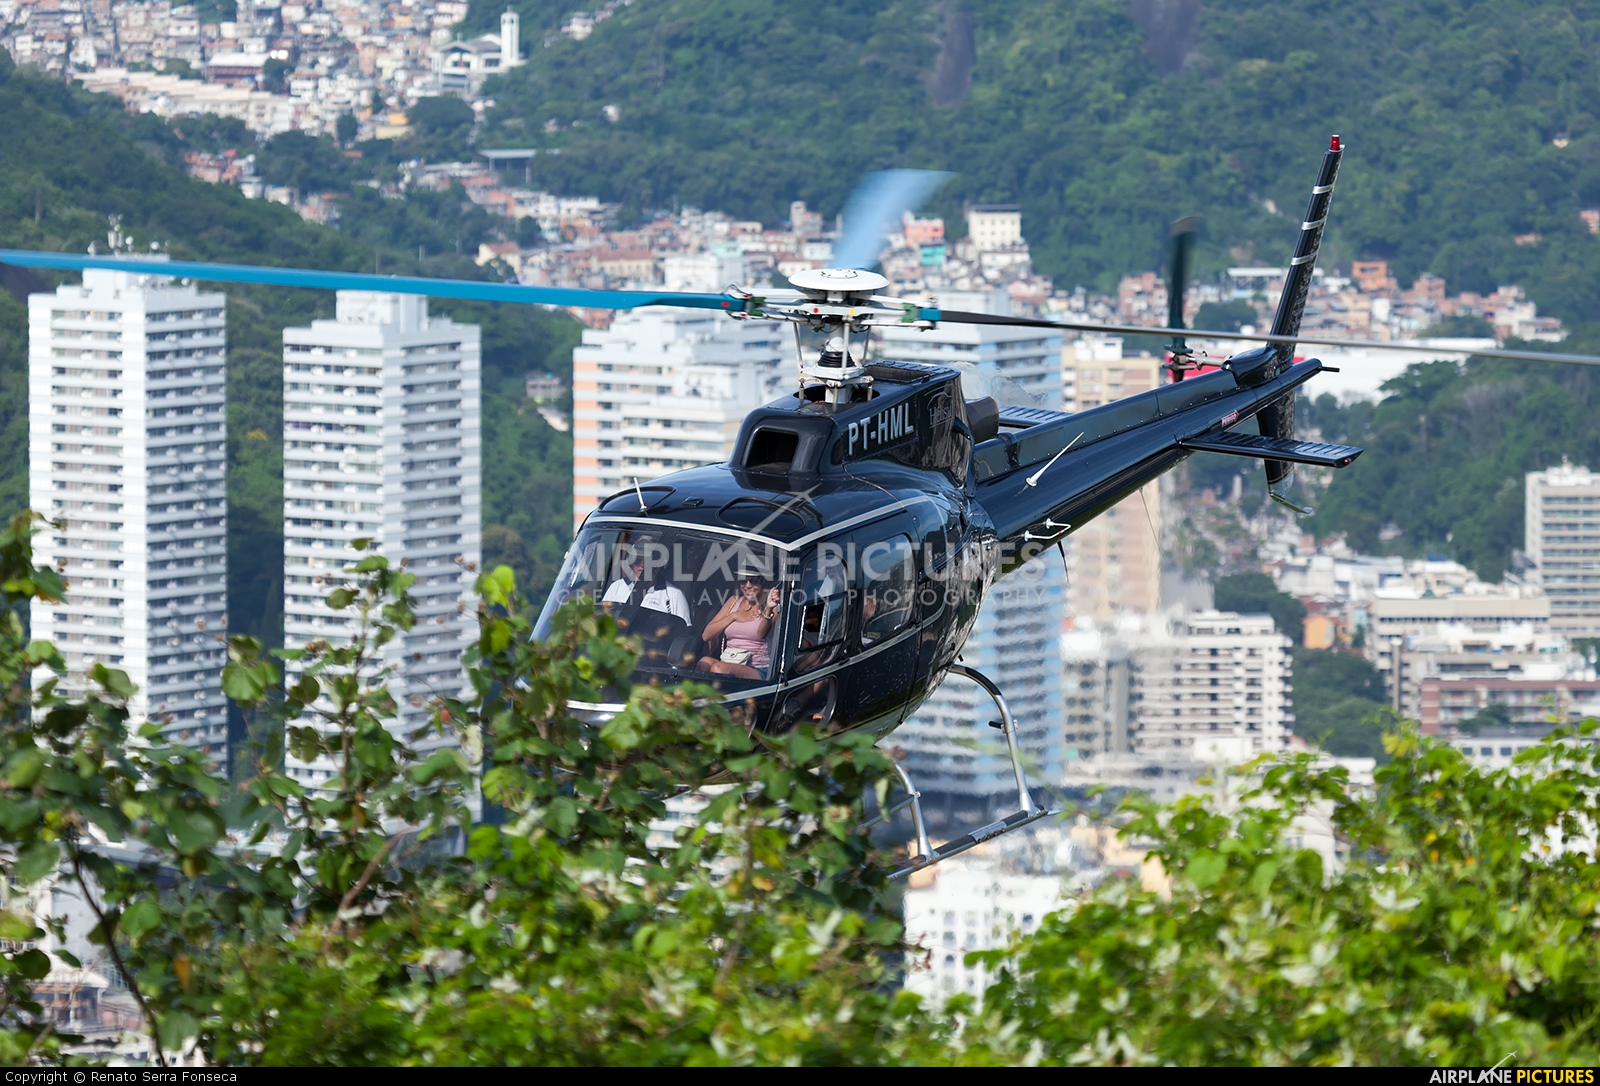 Helisul Táxi Aéreo PT-HML aircraft at Rio de Janeiro - Morro da Urca Heliport